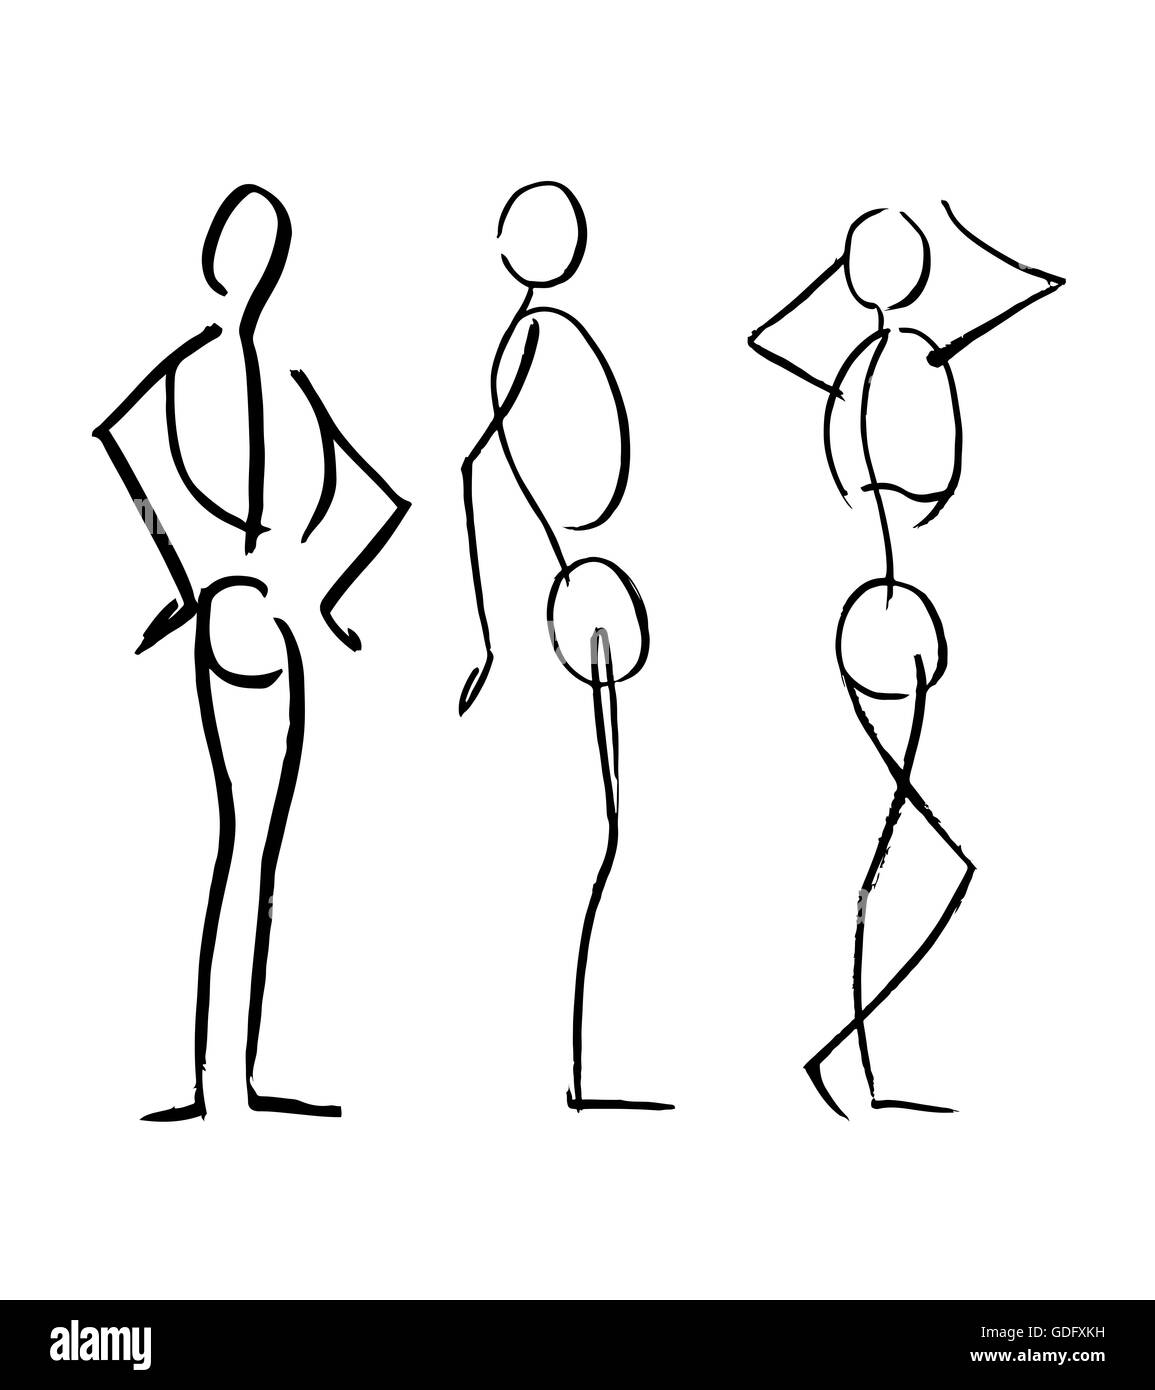 Handgezeichnete Illustrationen oder Zeichnung von verschiedenen Männern menschlichen Körperpositionen in einer Skizze-Stil Stockfoto